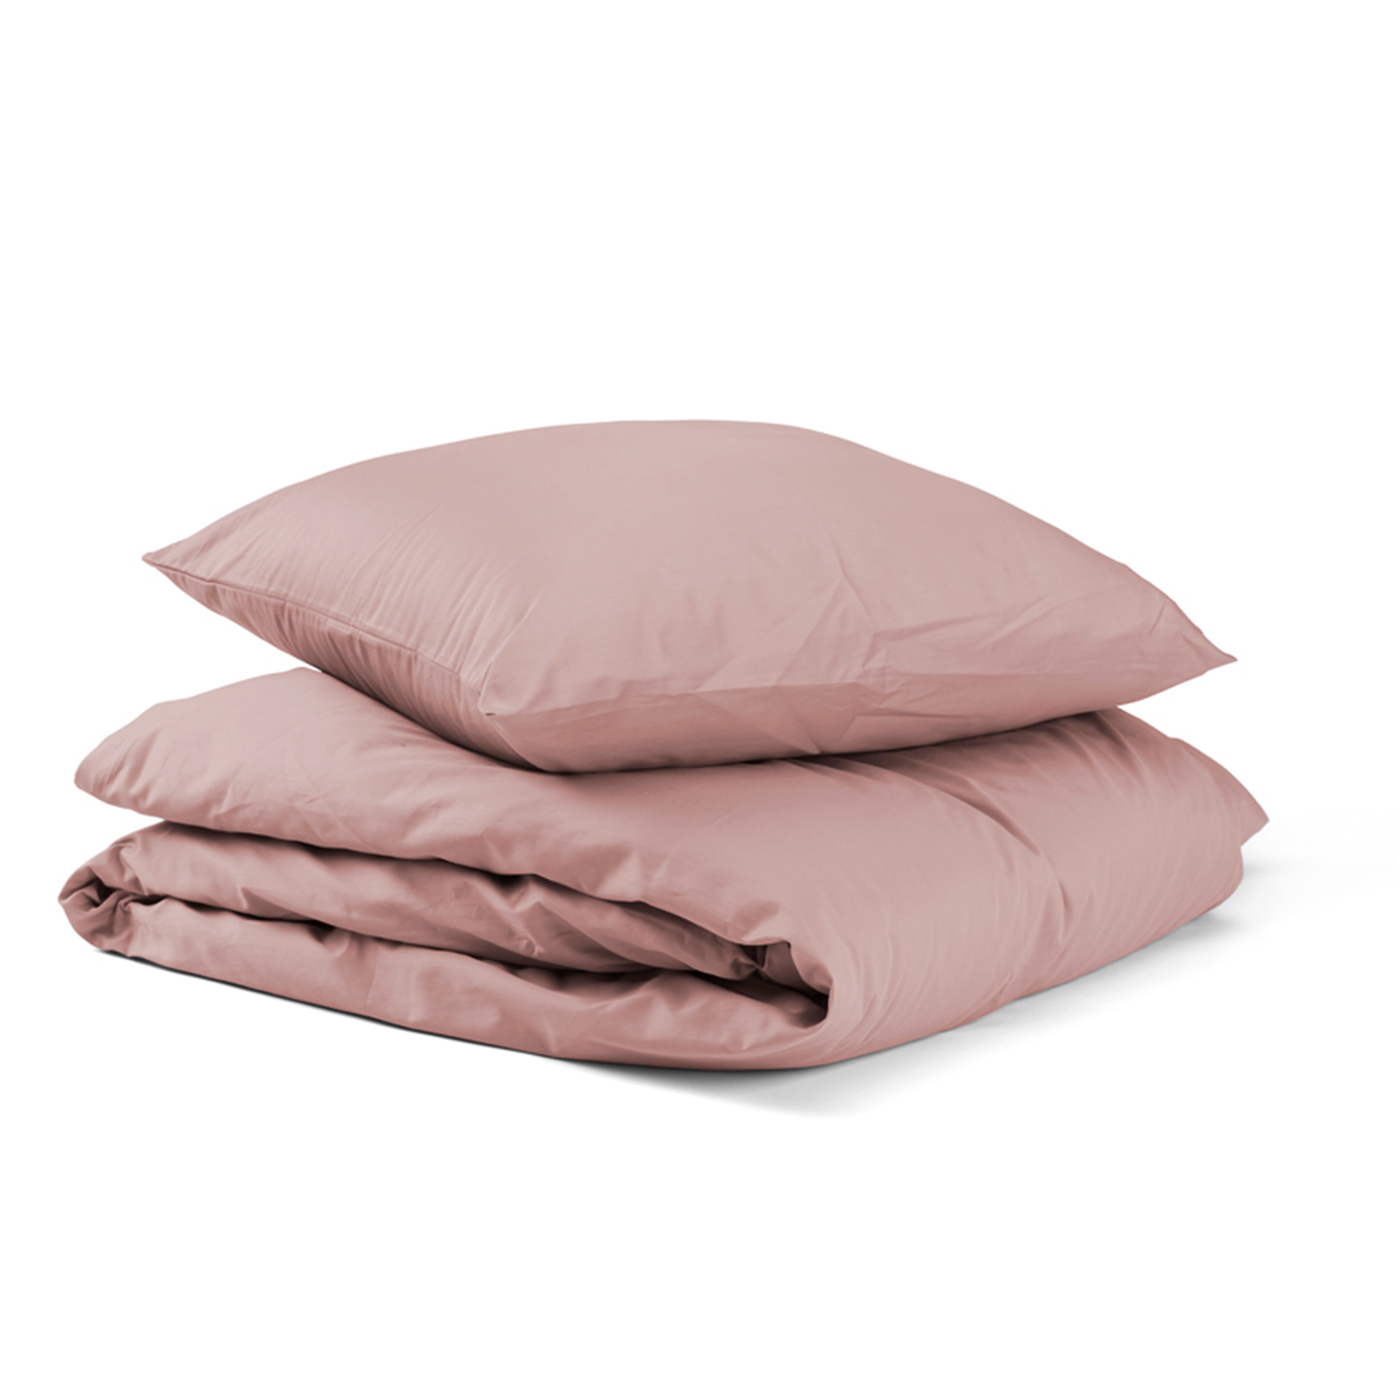 Billede af Unikka sengetøj 200x200 rosa satin